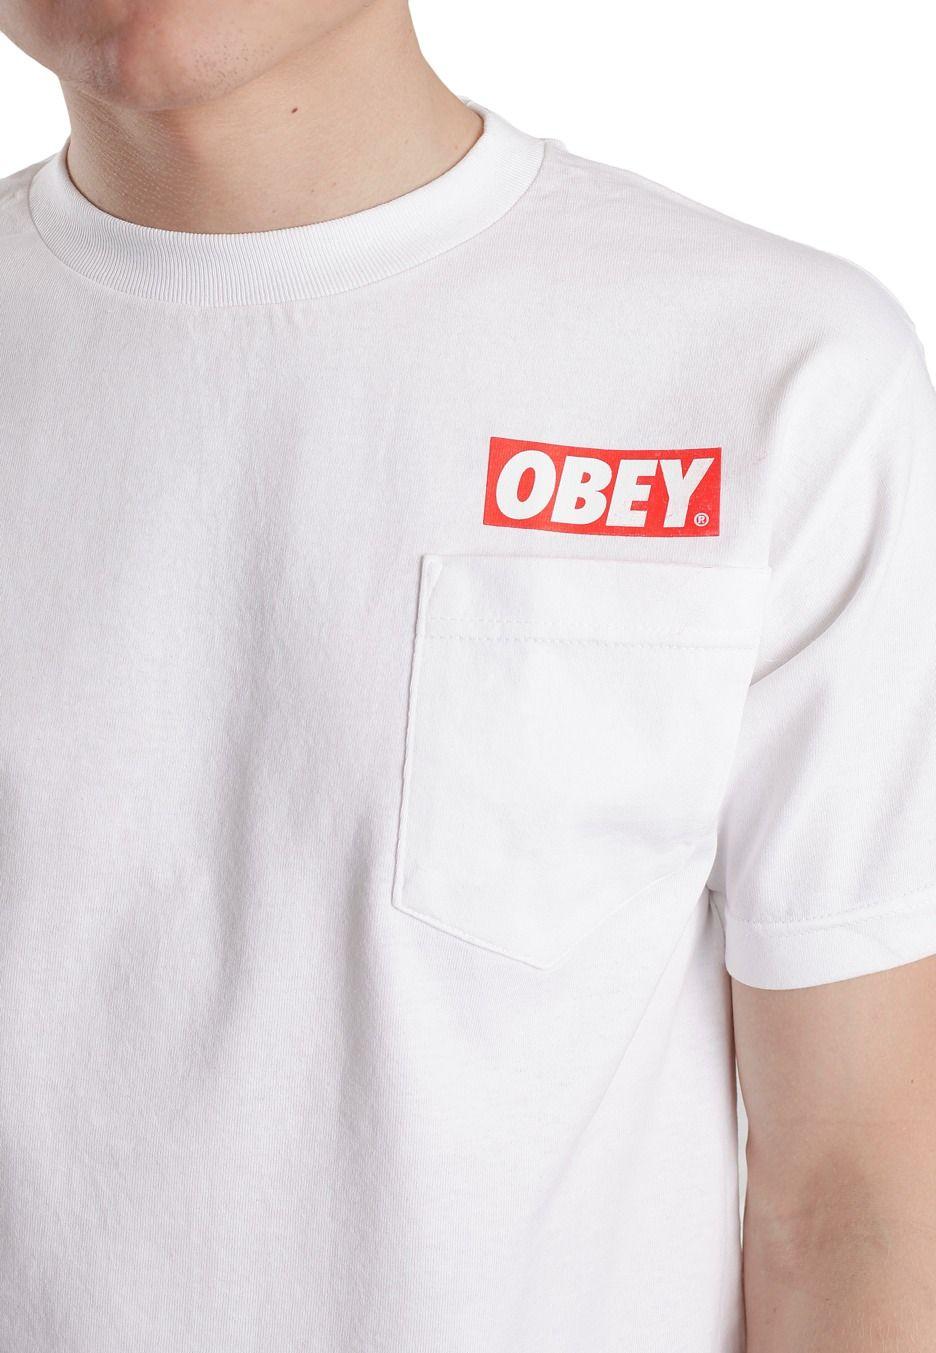 Obey Bar Logo - Obey Bar Logo White Shirt Shop